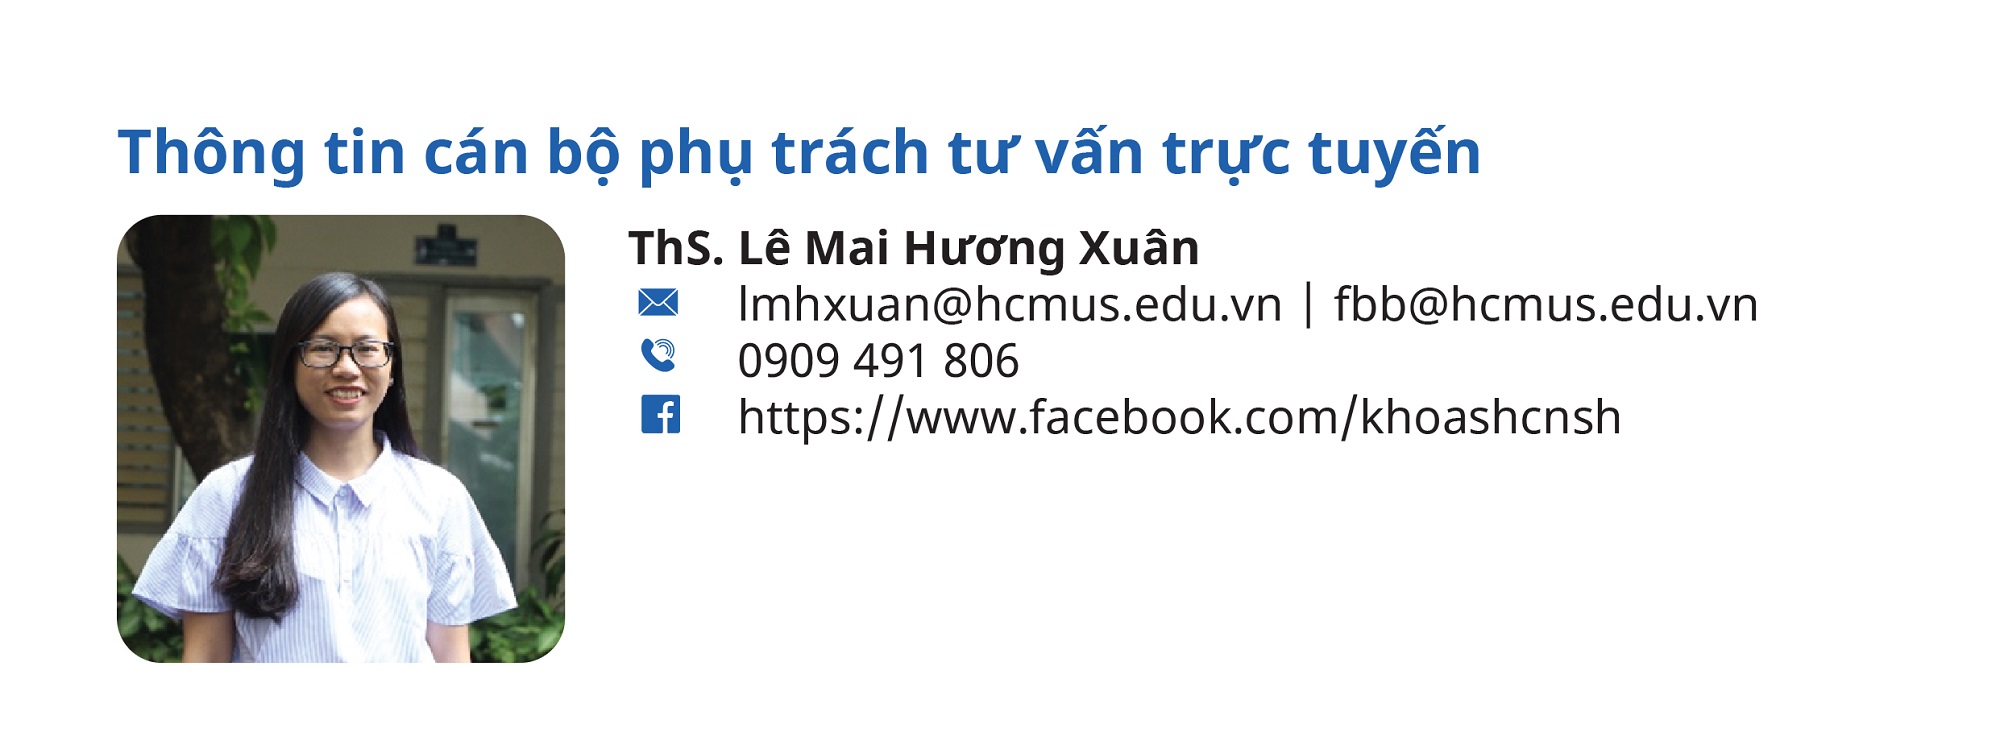 Thong_tin_dang_web-01